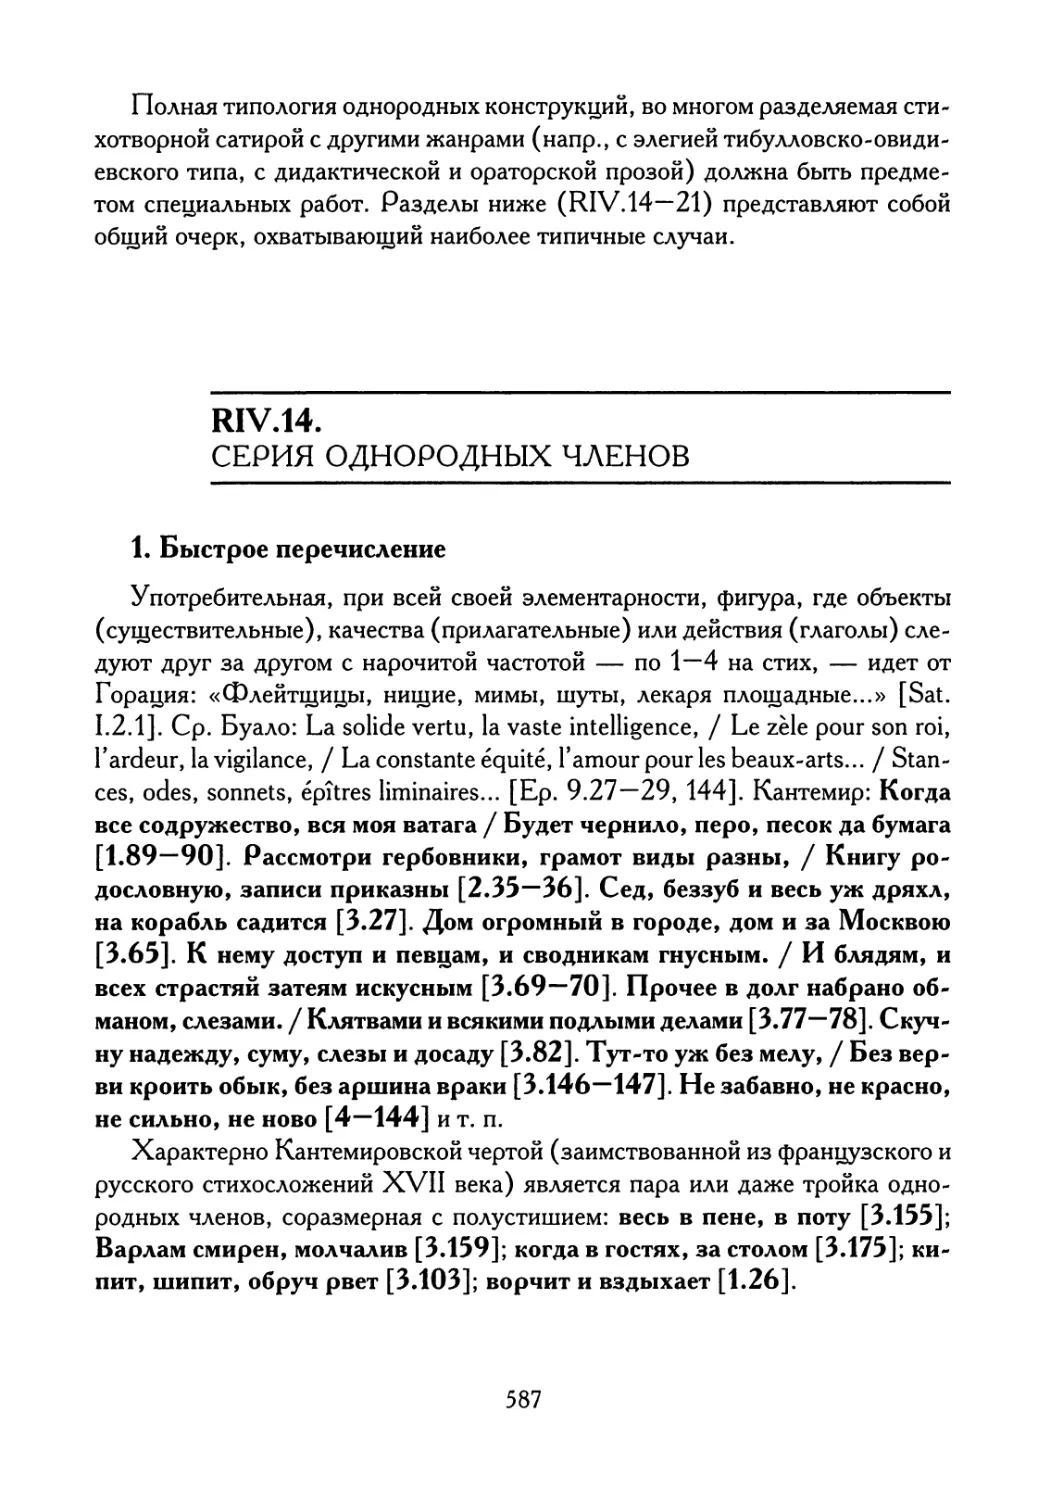 RIV.14. Серия однородных членов
1. Быстрое перечисление